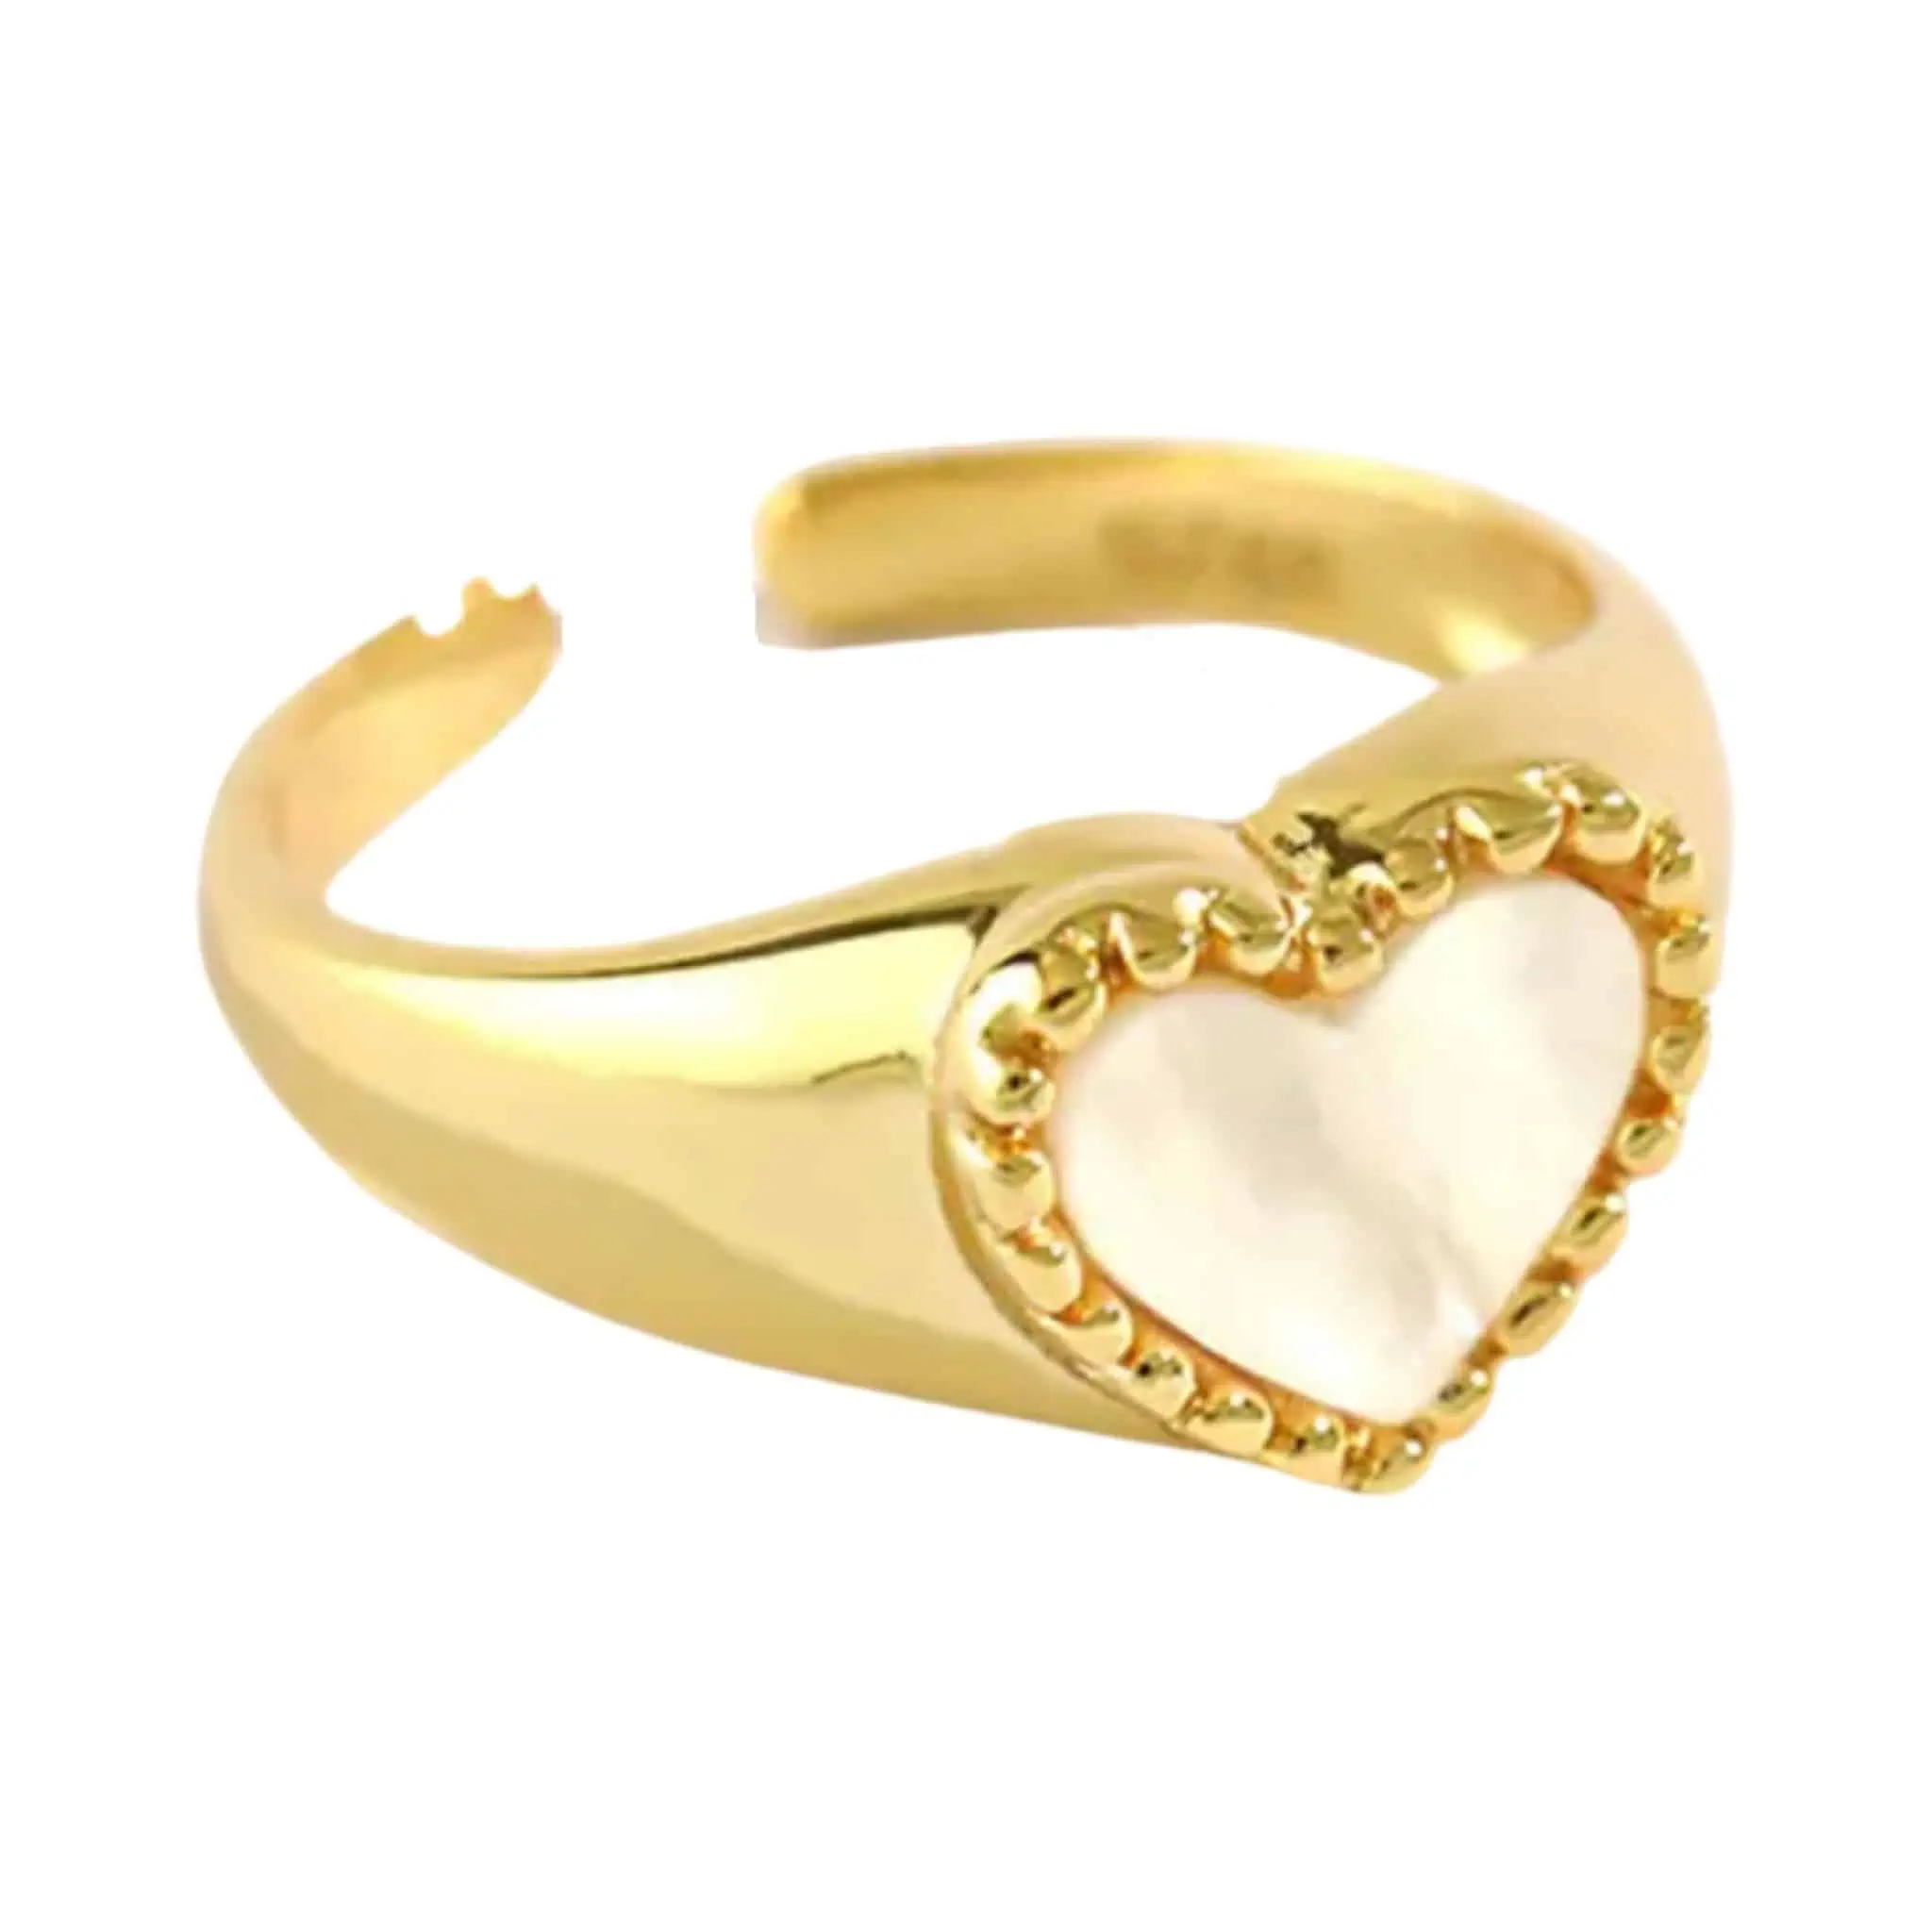 Product Afbeelding Vooraanzicht van onze nieuwe verstelbare ring. Met parelmoer hart in de vorm van een hart met ballen. De ring id gemaakt van 925 sterling zilver met een gouden laagje. De ring is verstelbaar.